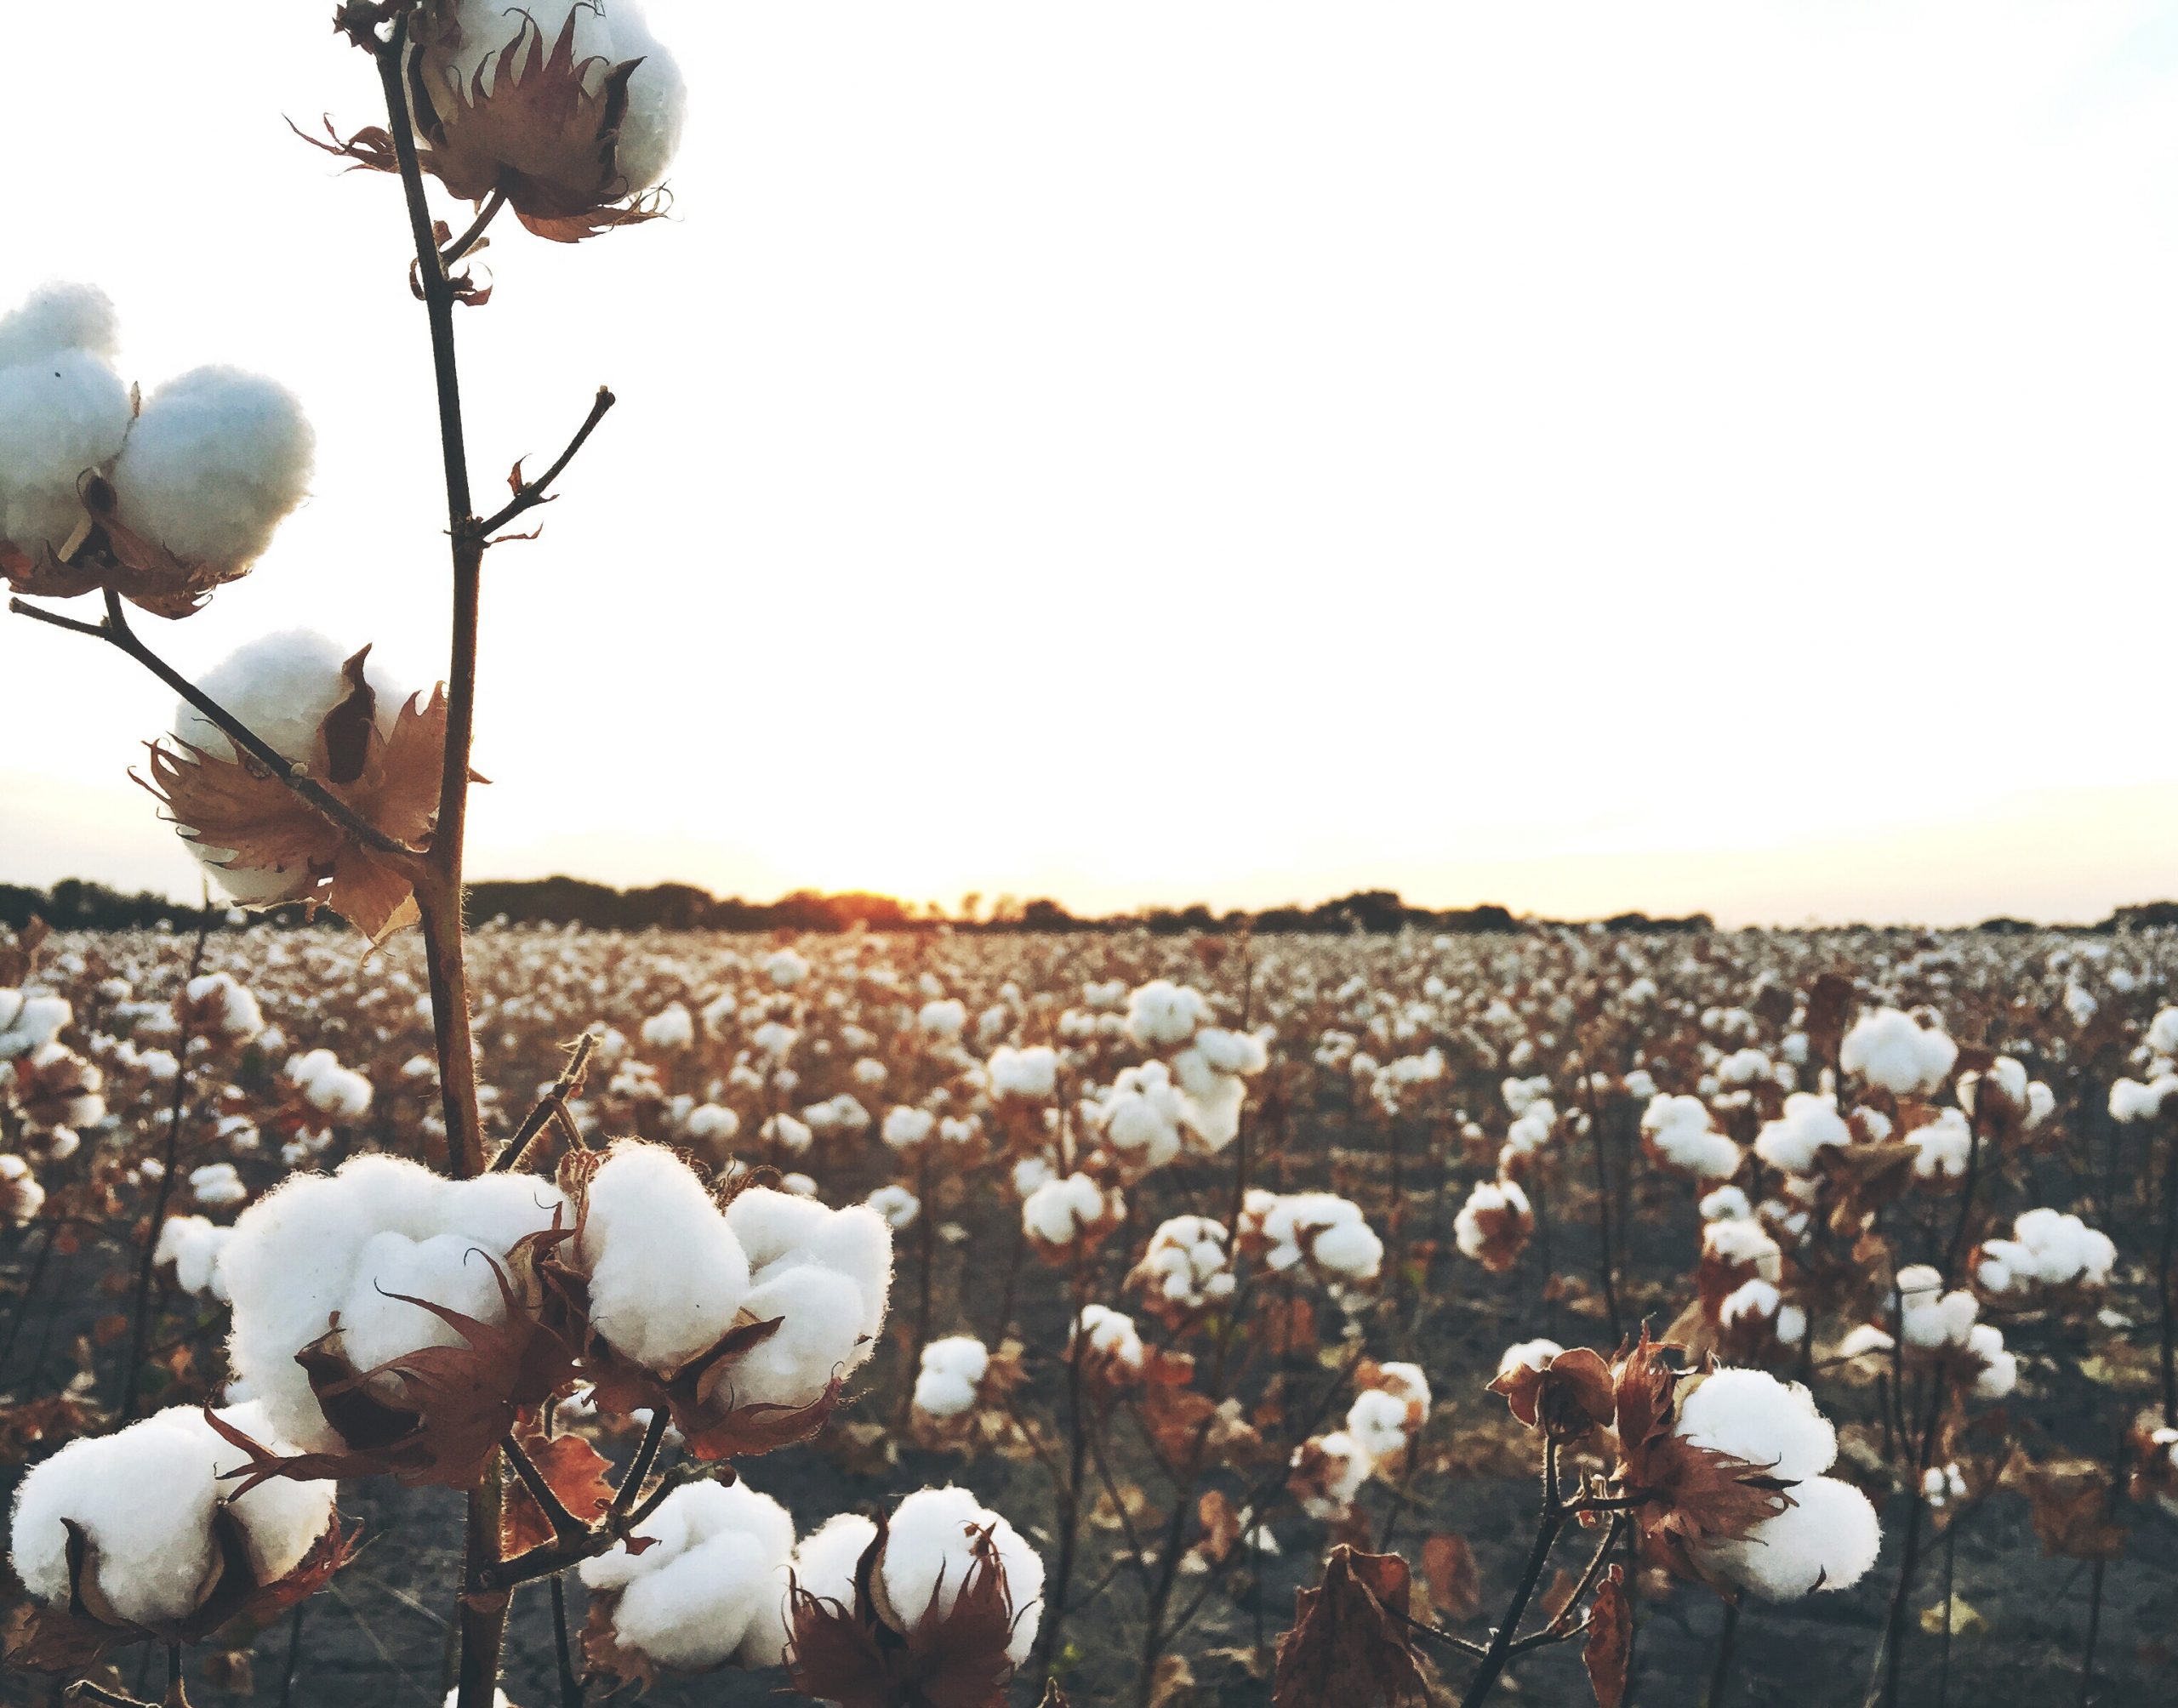 el cultivo de algodón supone entre el 3 y el 4% del consumo de agua en el mundo